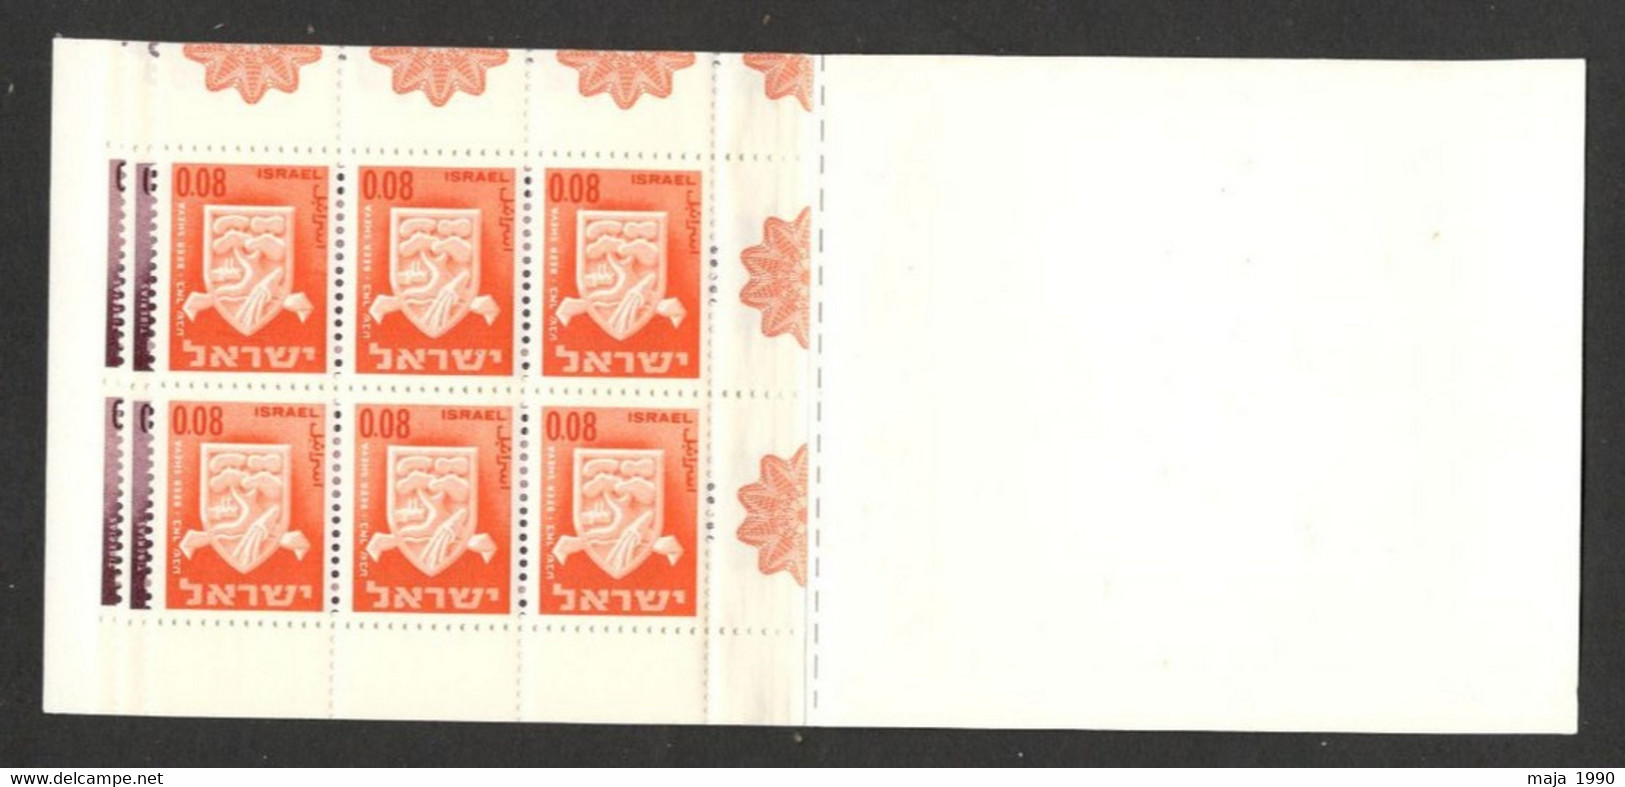 ISRAEL - MNH BOOKLET - DEFINITIVE STAMPS - 1965. - Booklets